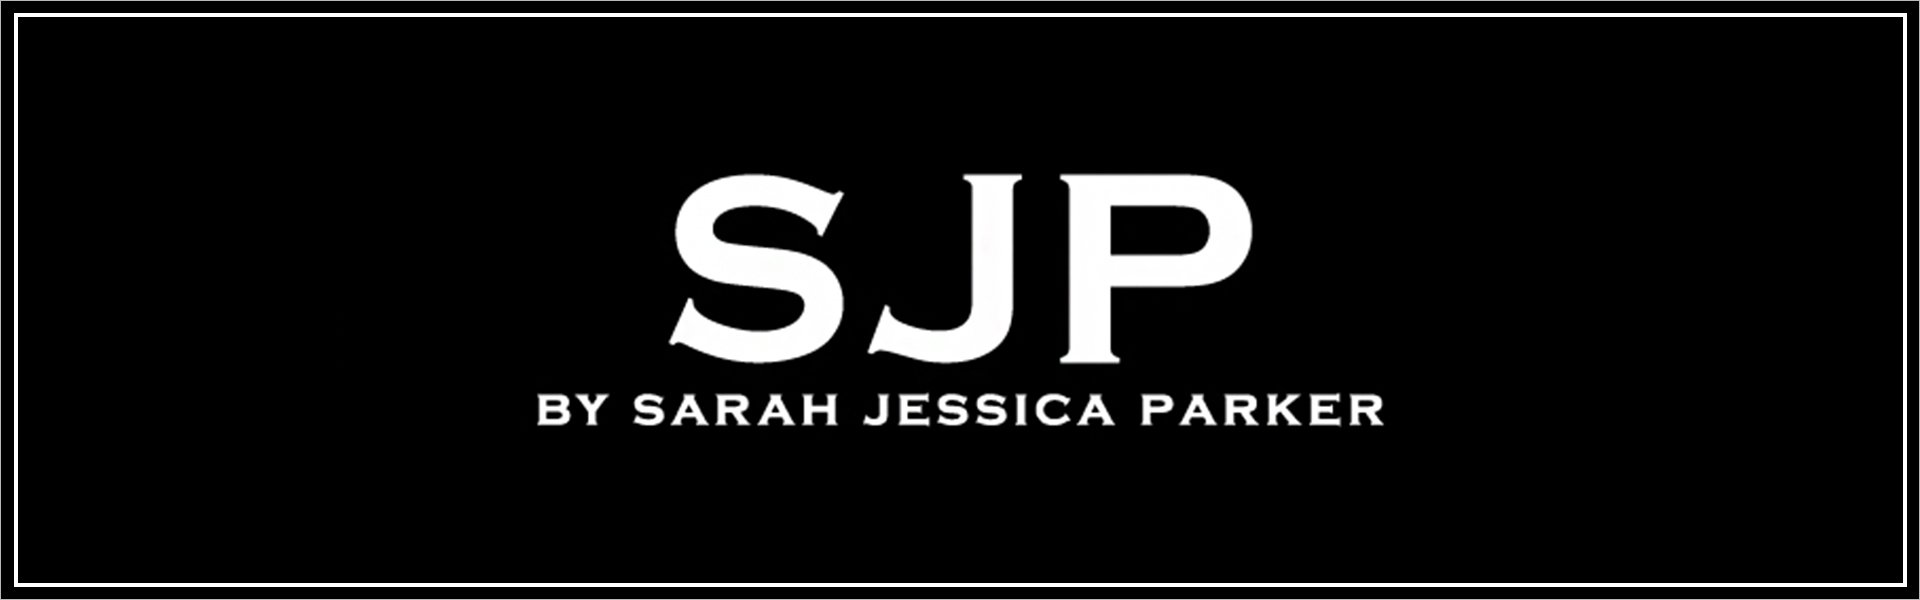 Lovely Sheer - EDP Sarah Jessica Parker